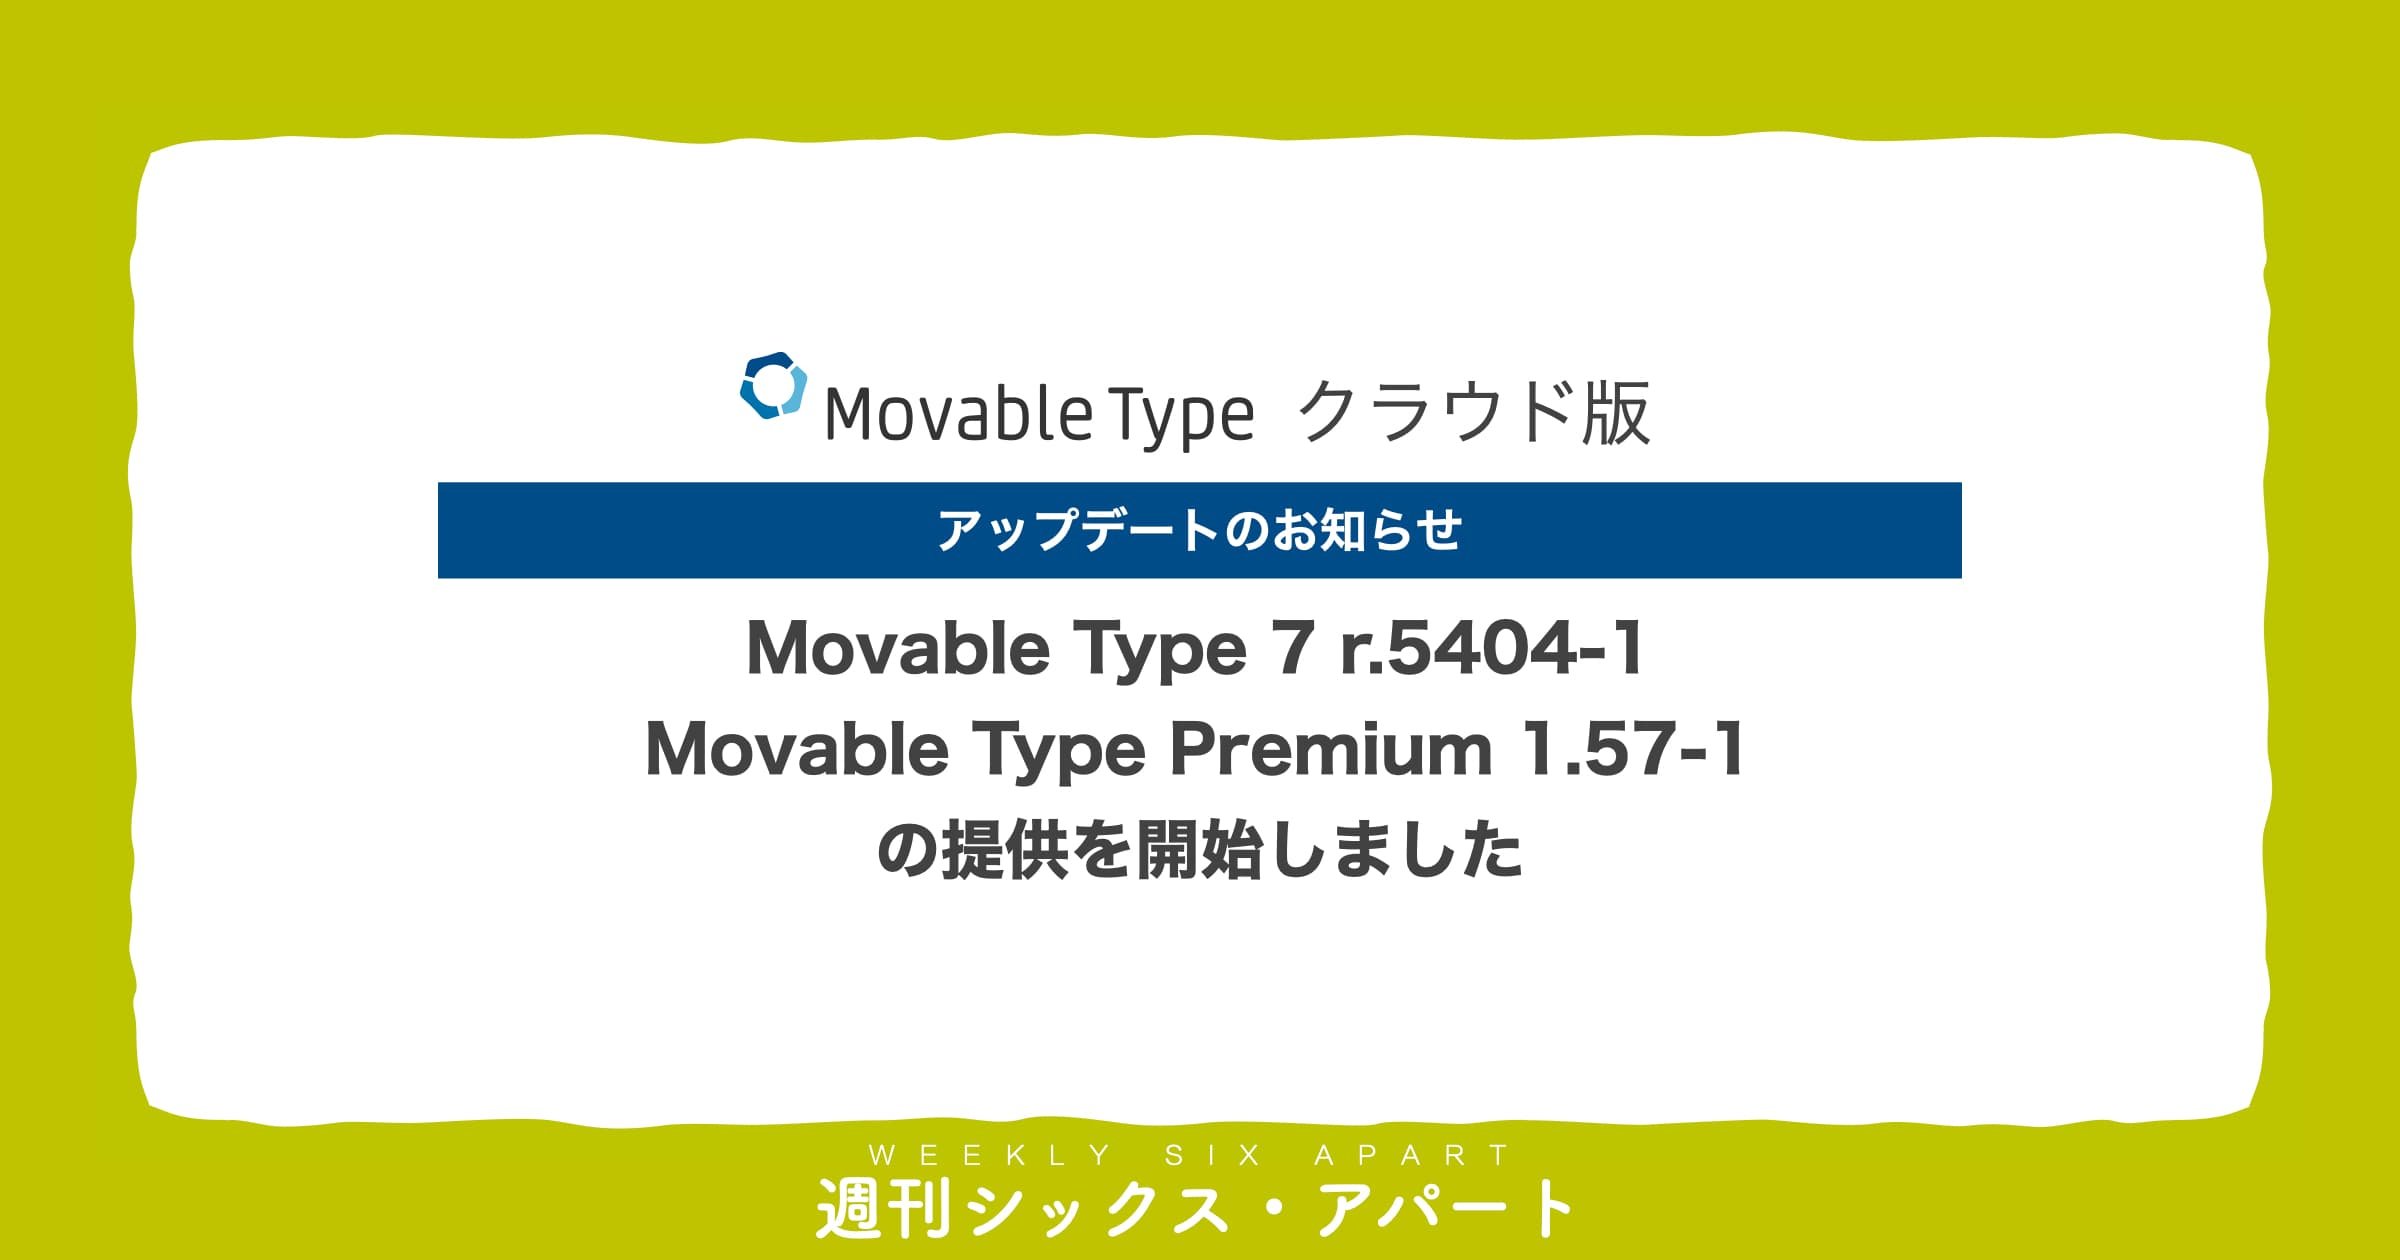 Movable Type 7 r.5404-1、Movable Type Premium 1.57-1 の提供を開始しました（クラウド版のみ） #週刊SA